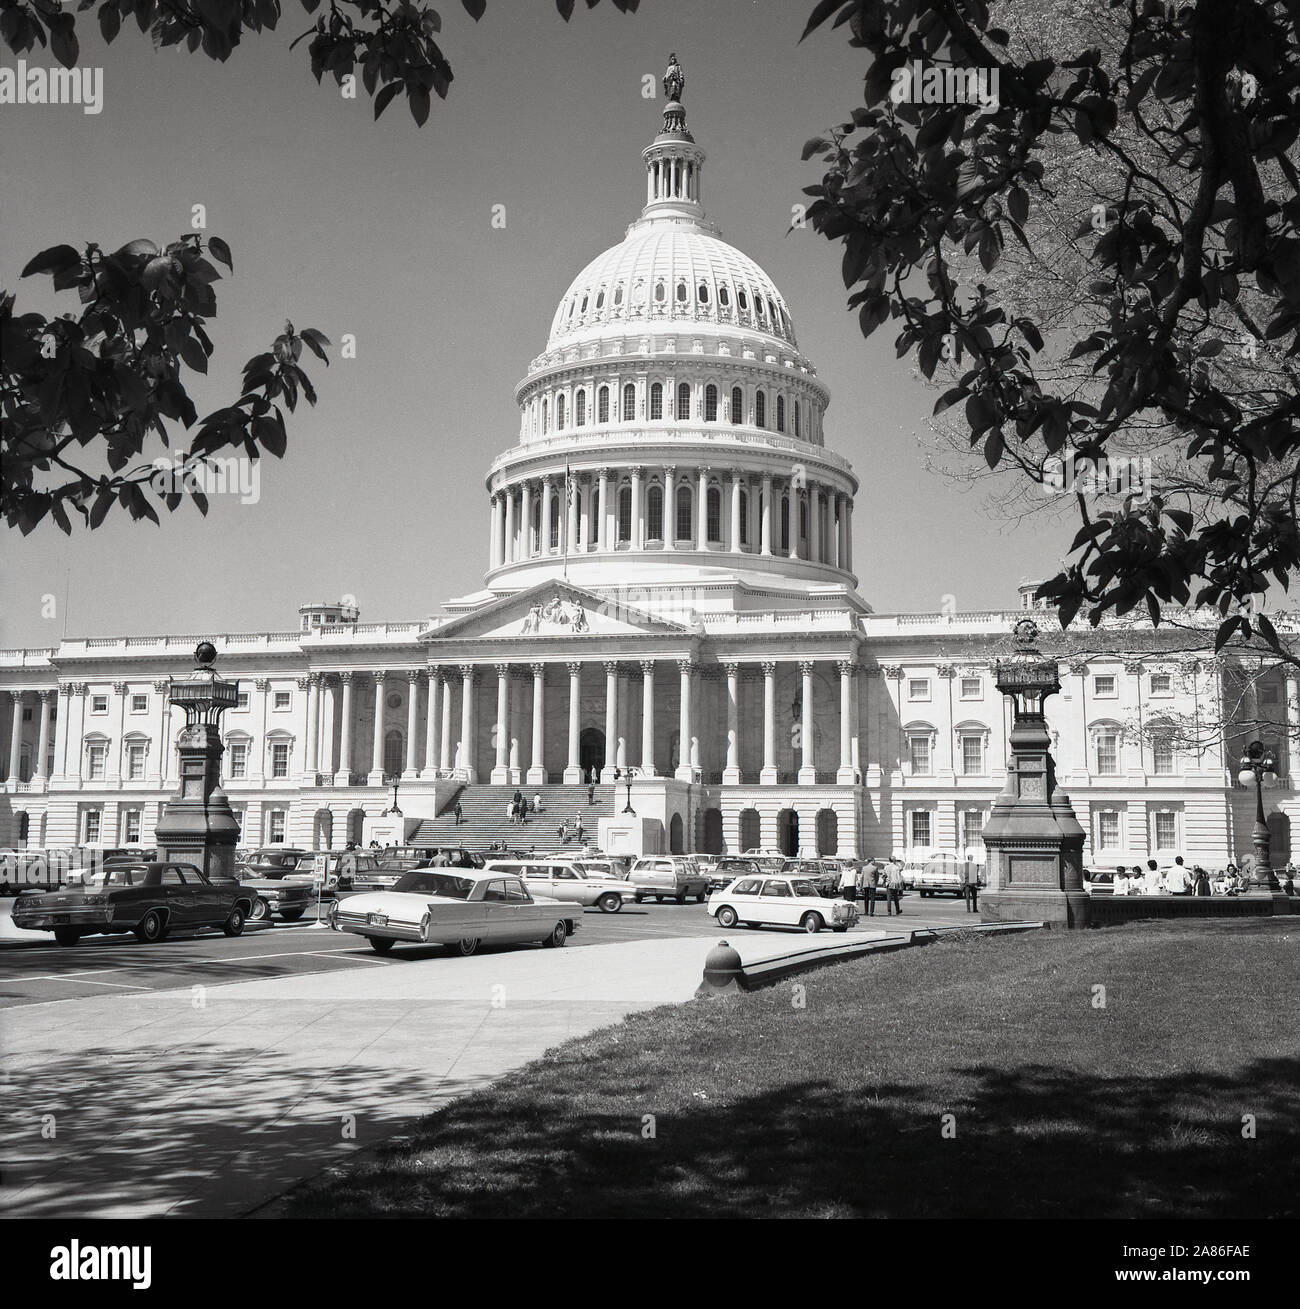 1950, historische, Washington D.C, USA, Bild aus dieser Ära der Capitol Building, der Heimat der uns Congess und Sitz der Legislative der US-Bundesregierung. Gebaut in einem neoklassischen Design, als es in den 1850er Jahren erweitert, eine große gusseiserne Kuppel die ursprüngliche kleinere untere Kuppel von 1818 ersetzt. Stockfoto